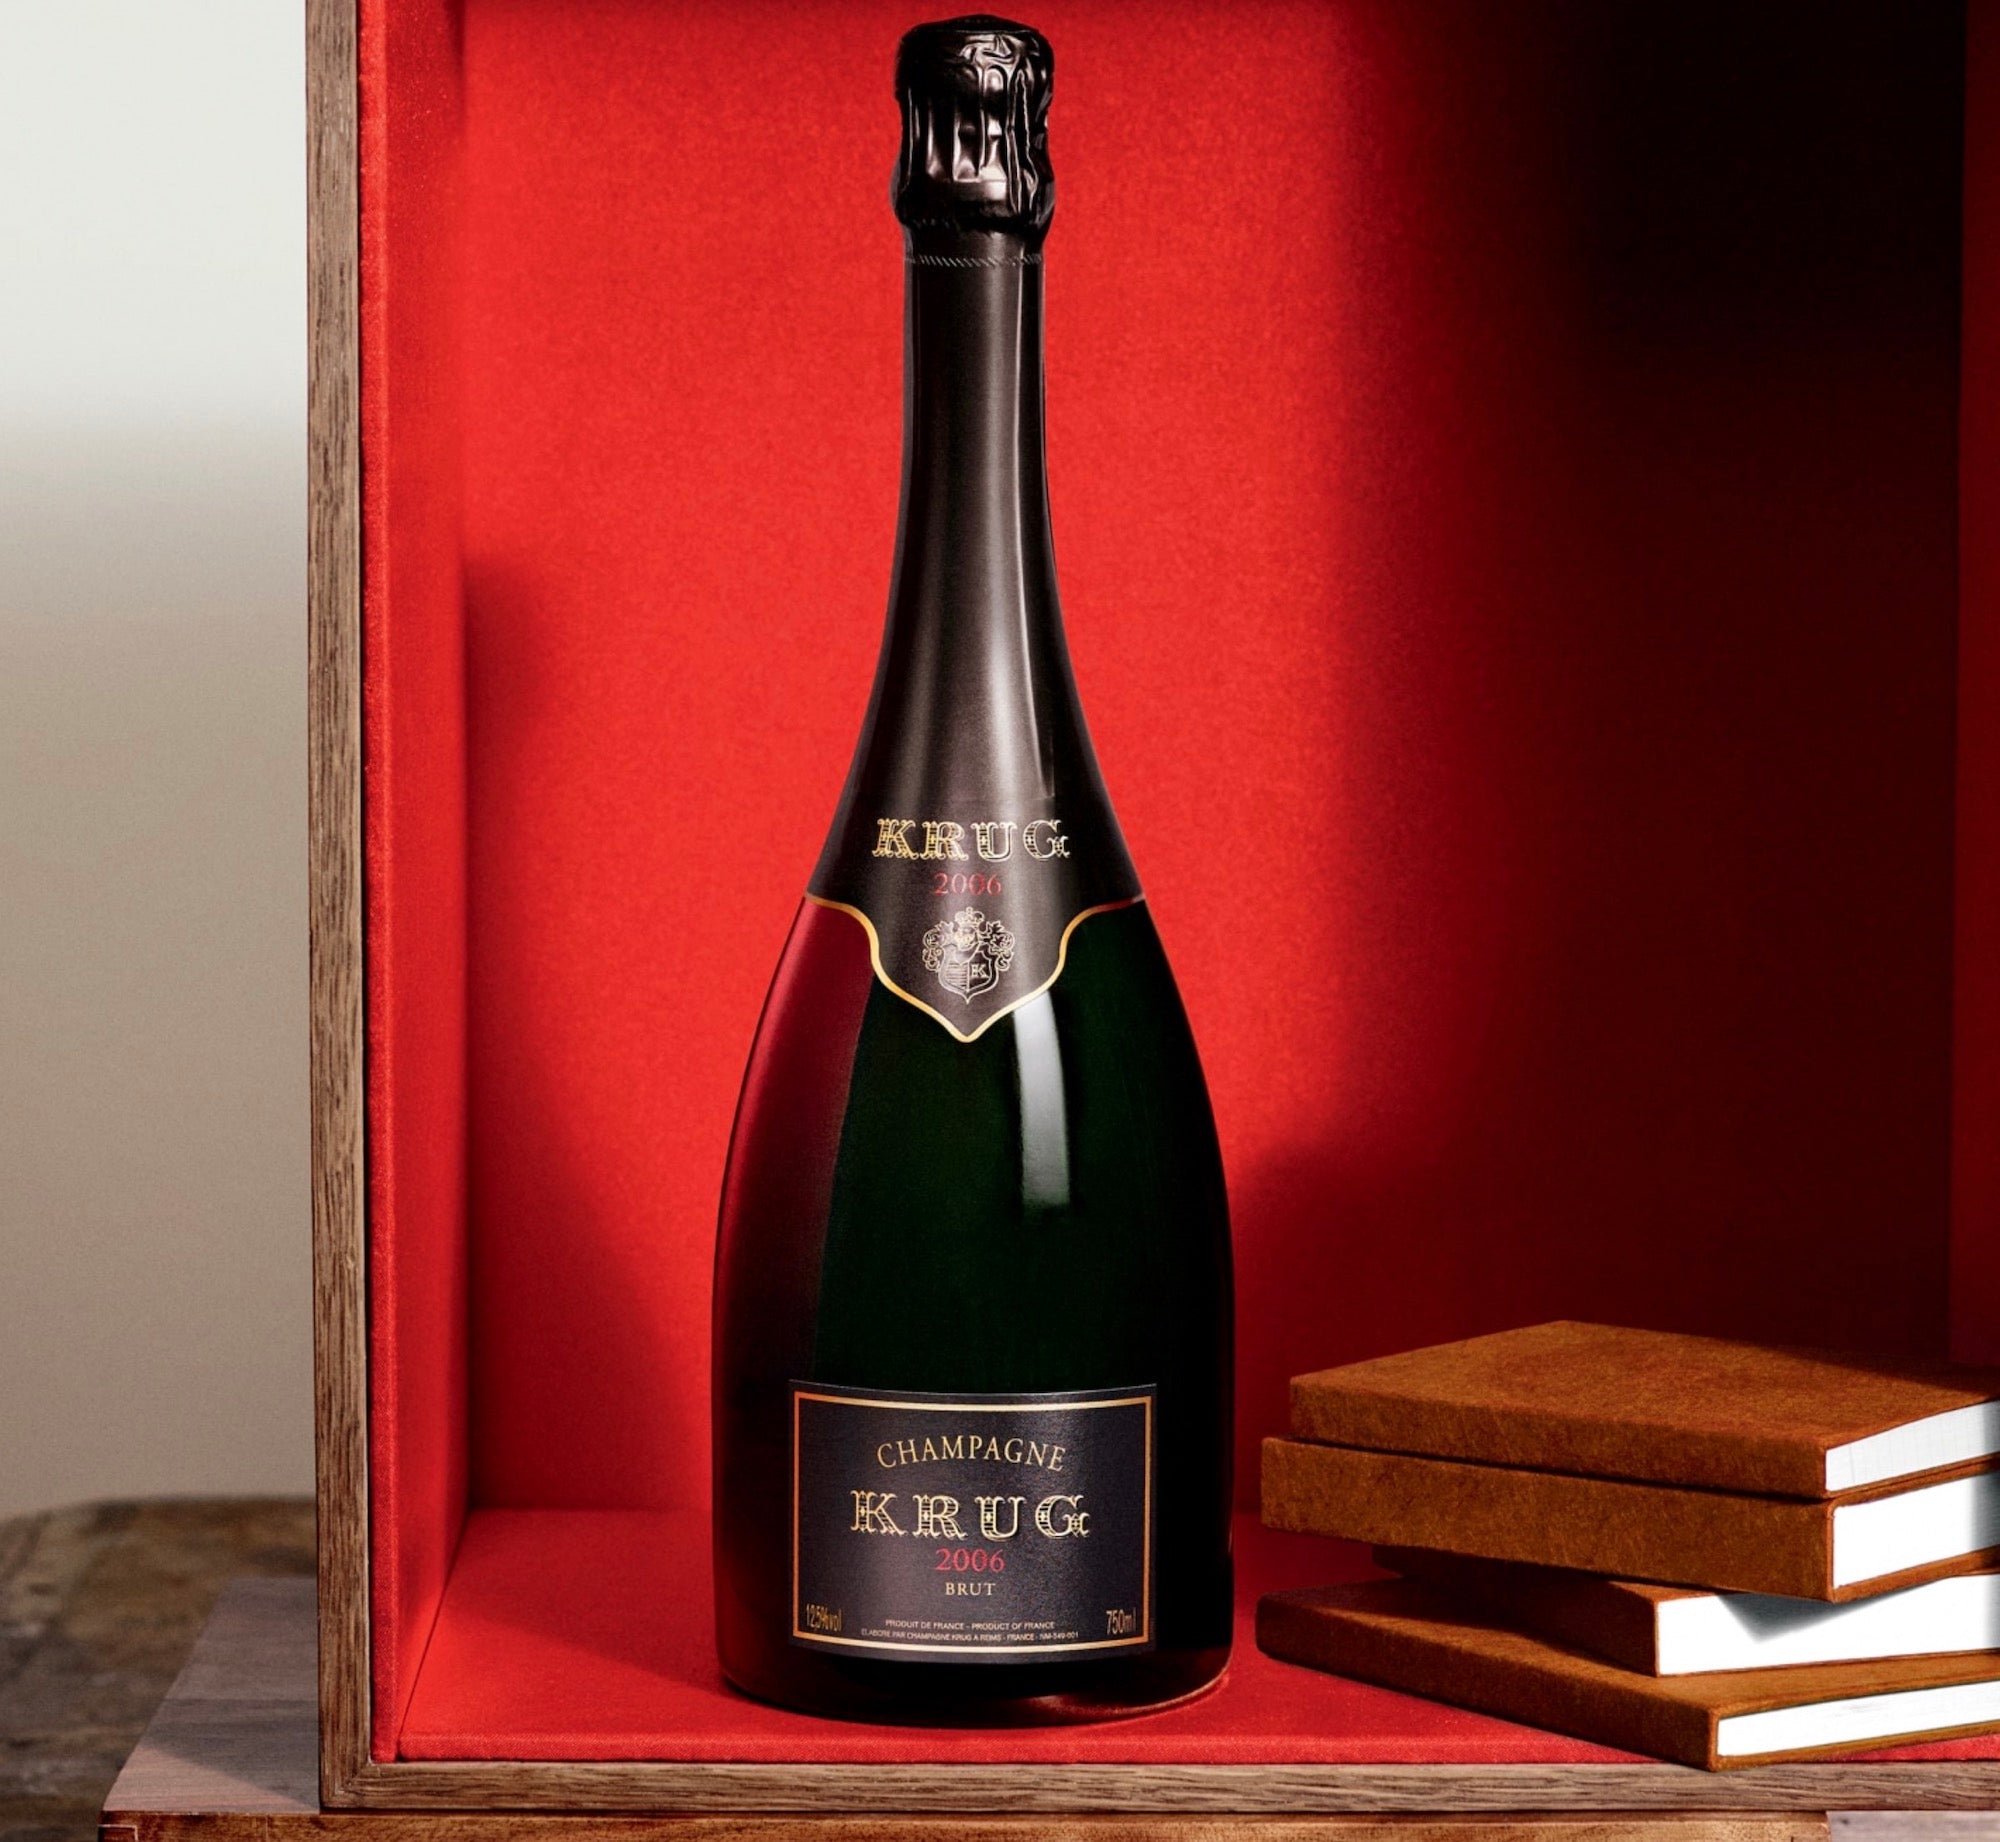 Krug Champagne Brut Grande Cuvee 170ÈME ÉDITION – Wine Chateau